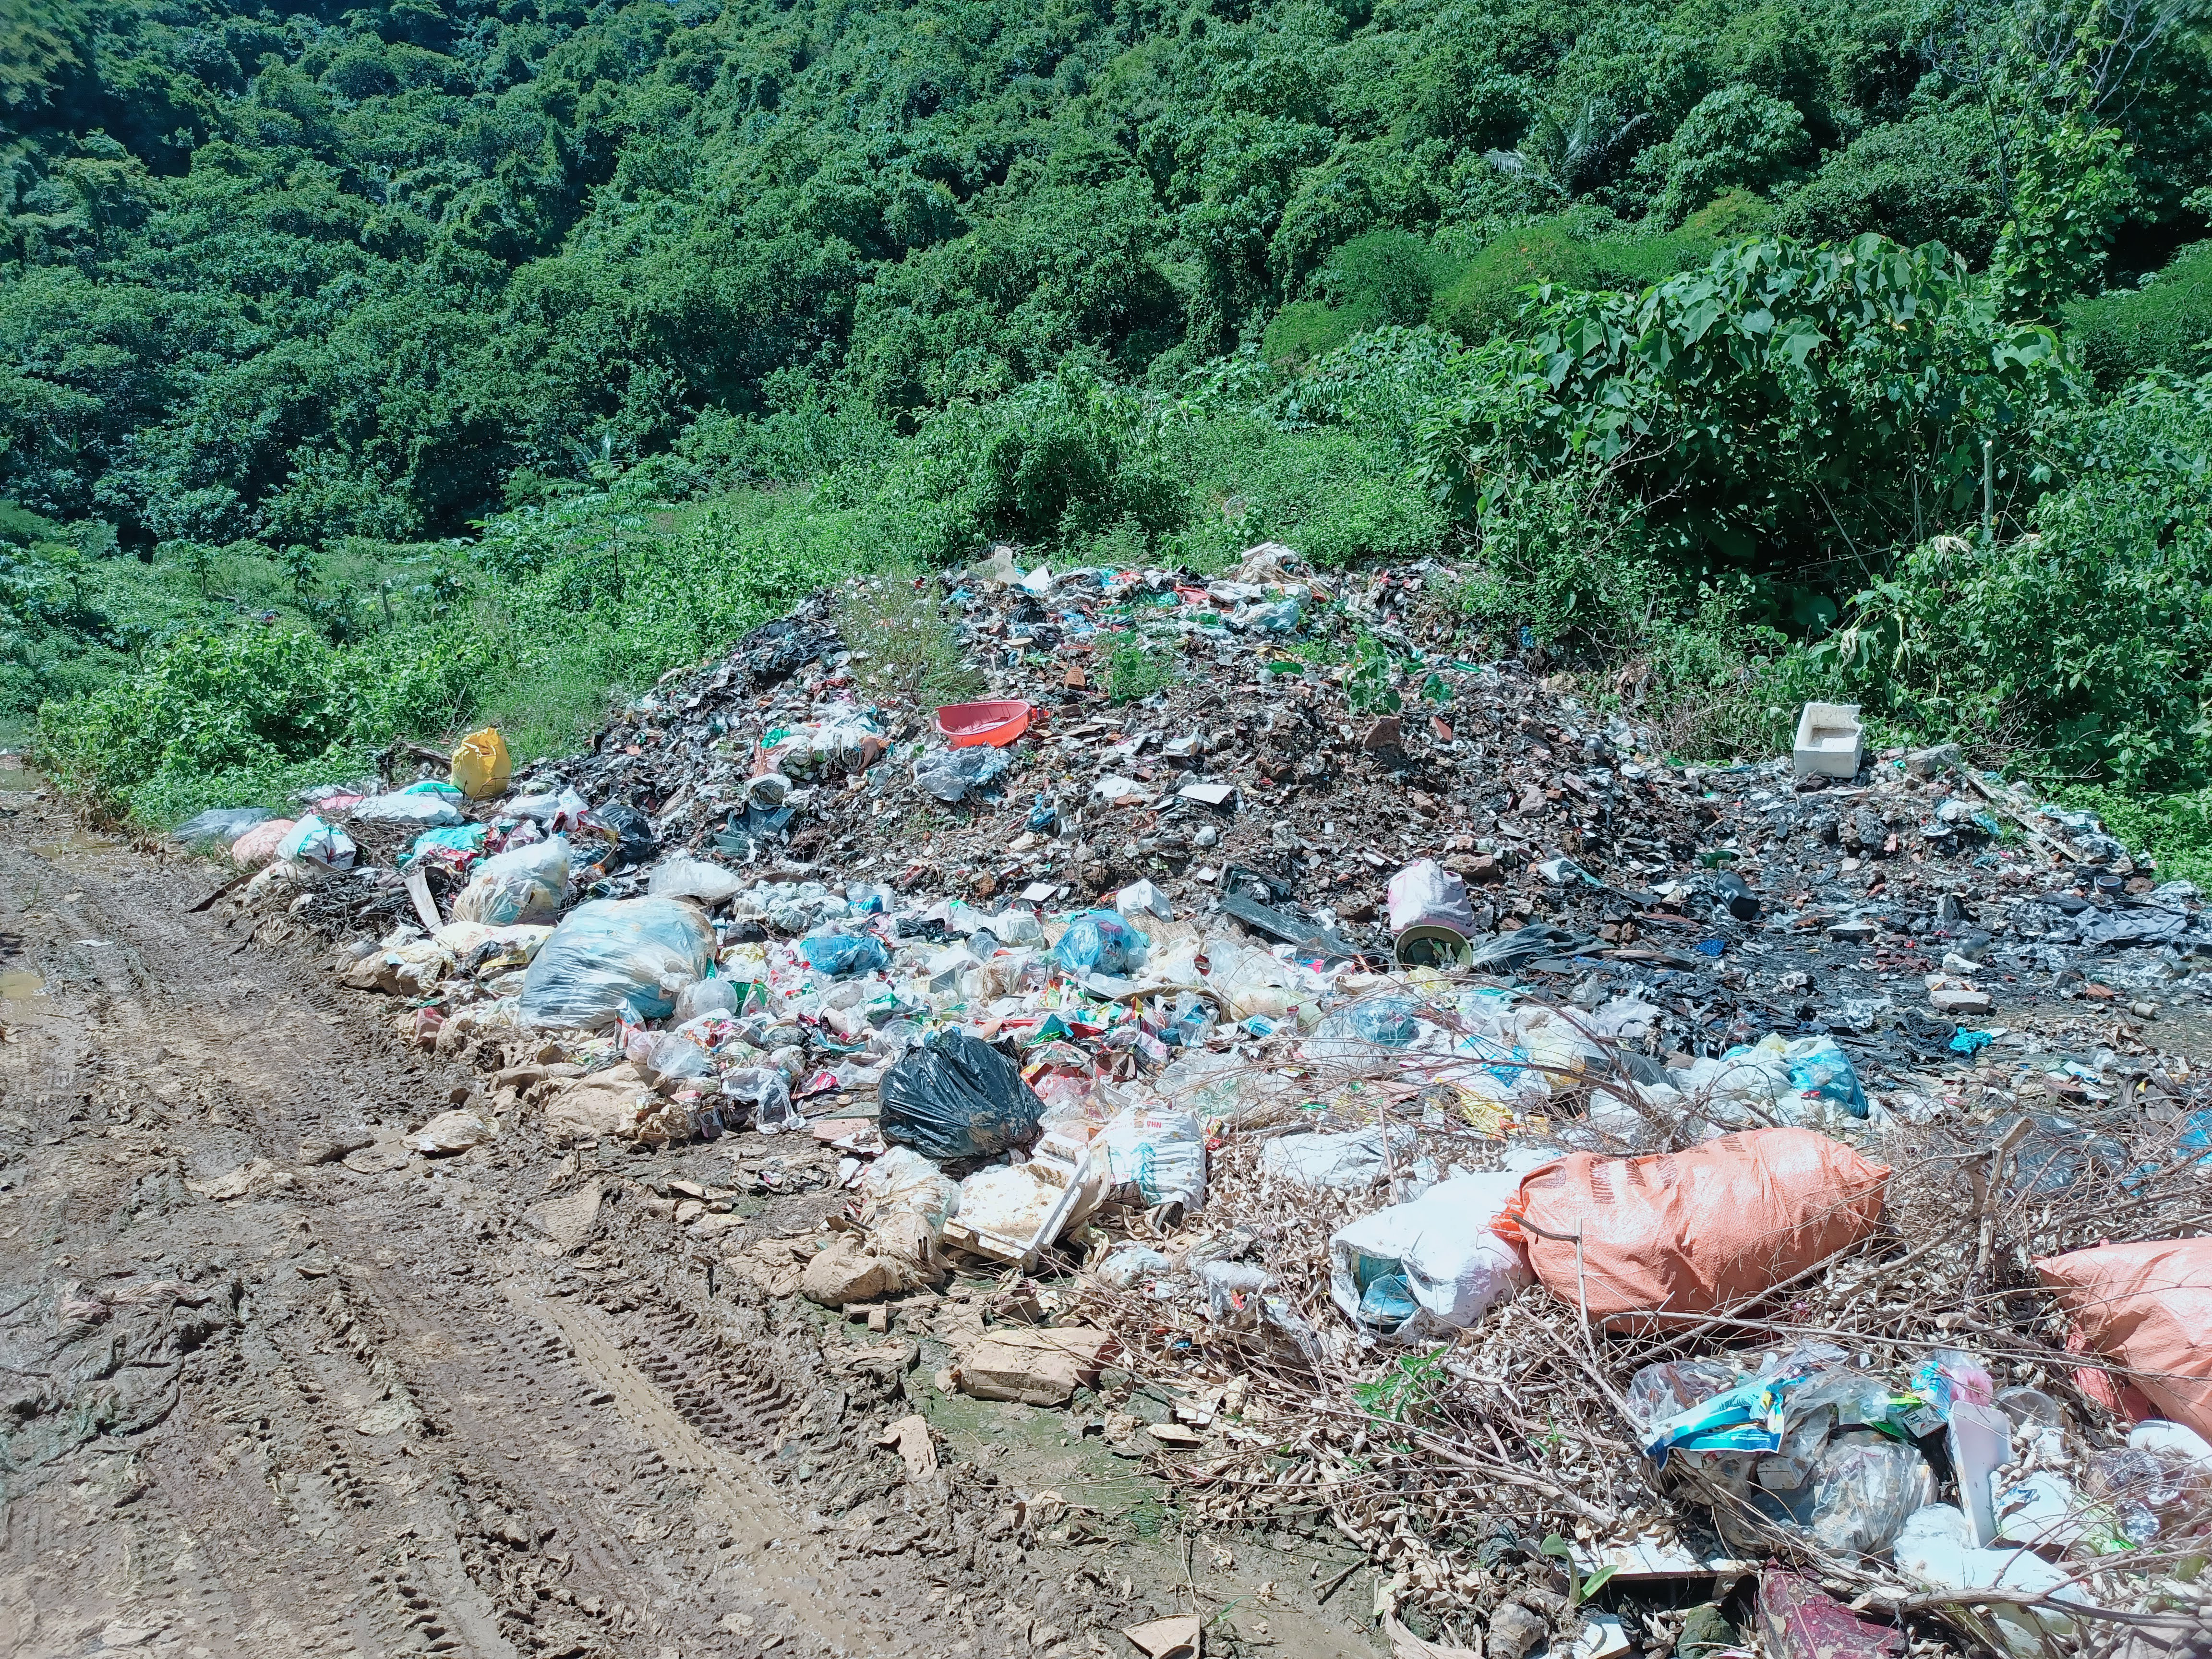 Hiện tại bãi rác này cũng chỉ chôn lấp theo kiểu truyền thống, thậm chí những lúc nắng lên, người dân đi nhặt phế liệu đã đốt rác gây ra ô nhiễm môi trường nghiêm trọng. Ảnh: Tiến Đông 